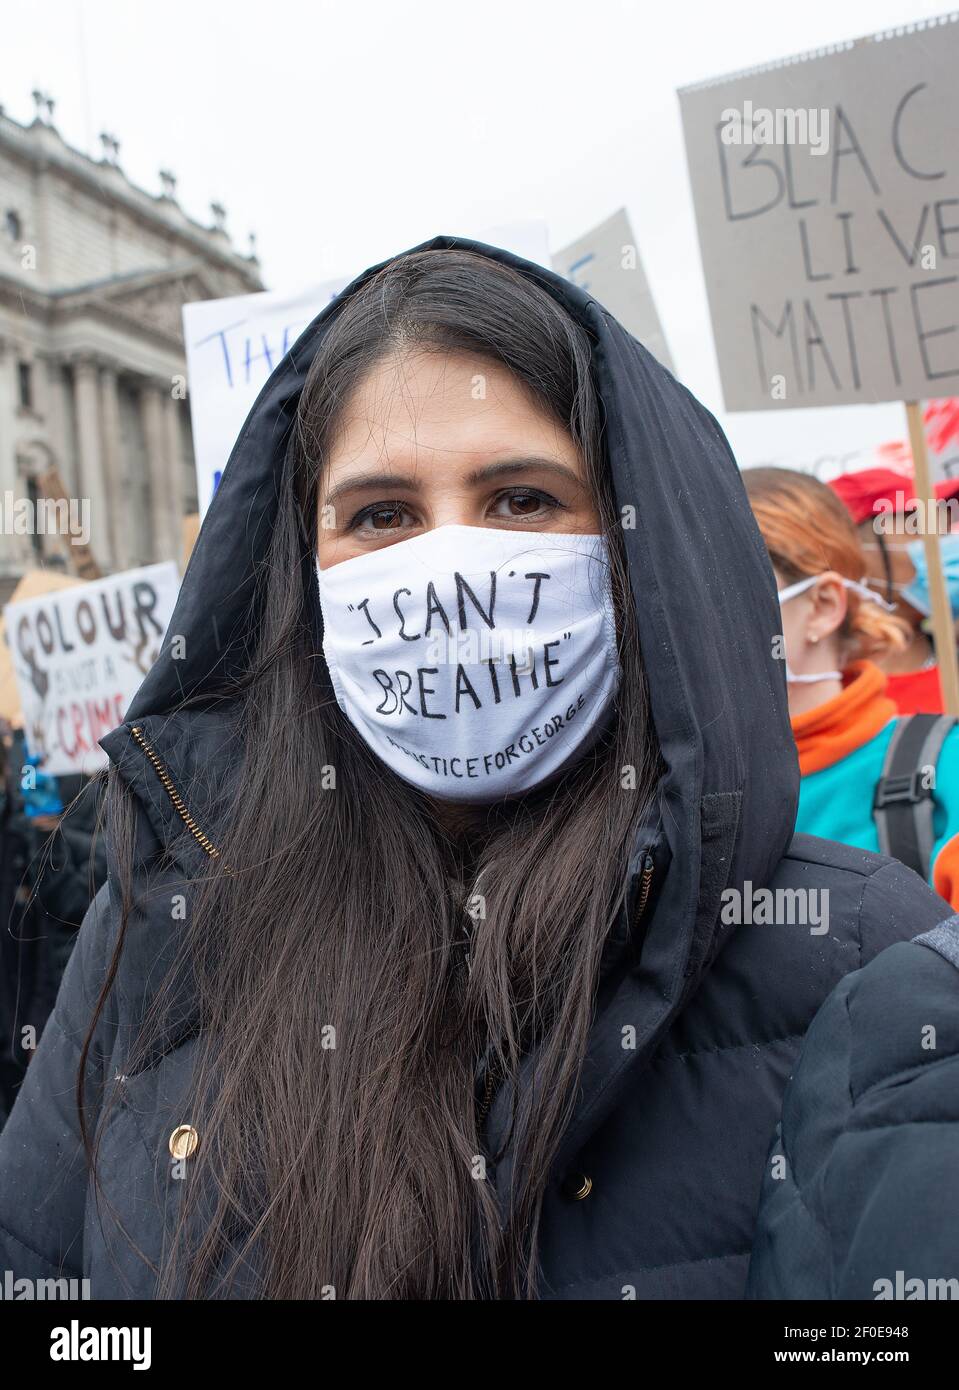 BLM supporter portant un masque de lecture I CAN`T BREATHE, à la manifestation Black Lives Matter, Londres, en signe de protestation contre la récente brutalité de la police américaine. Banque D'Images